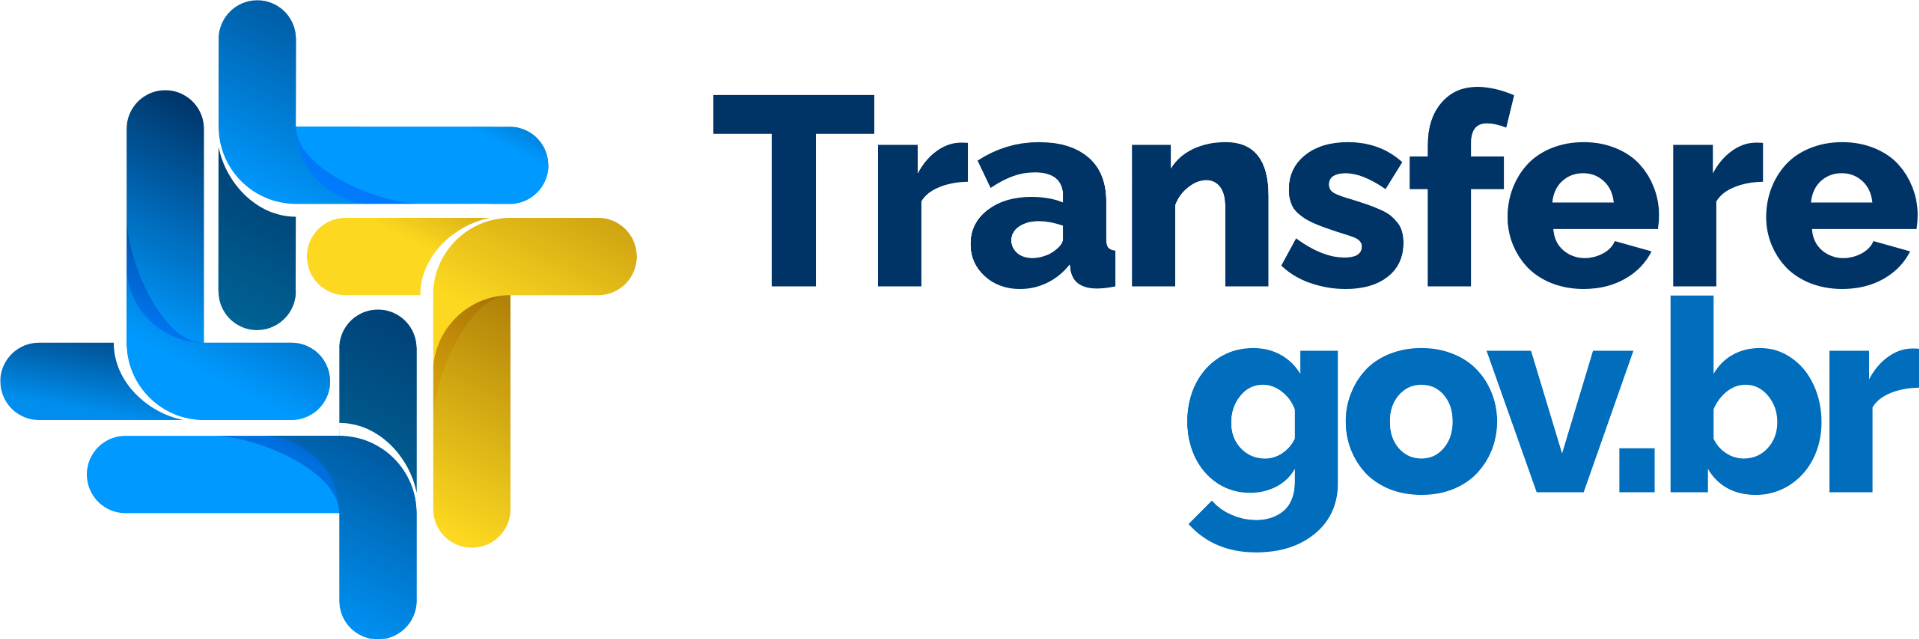 Link para acesso ao: Logo Transferegov.br - horizontal.png